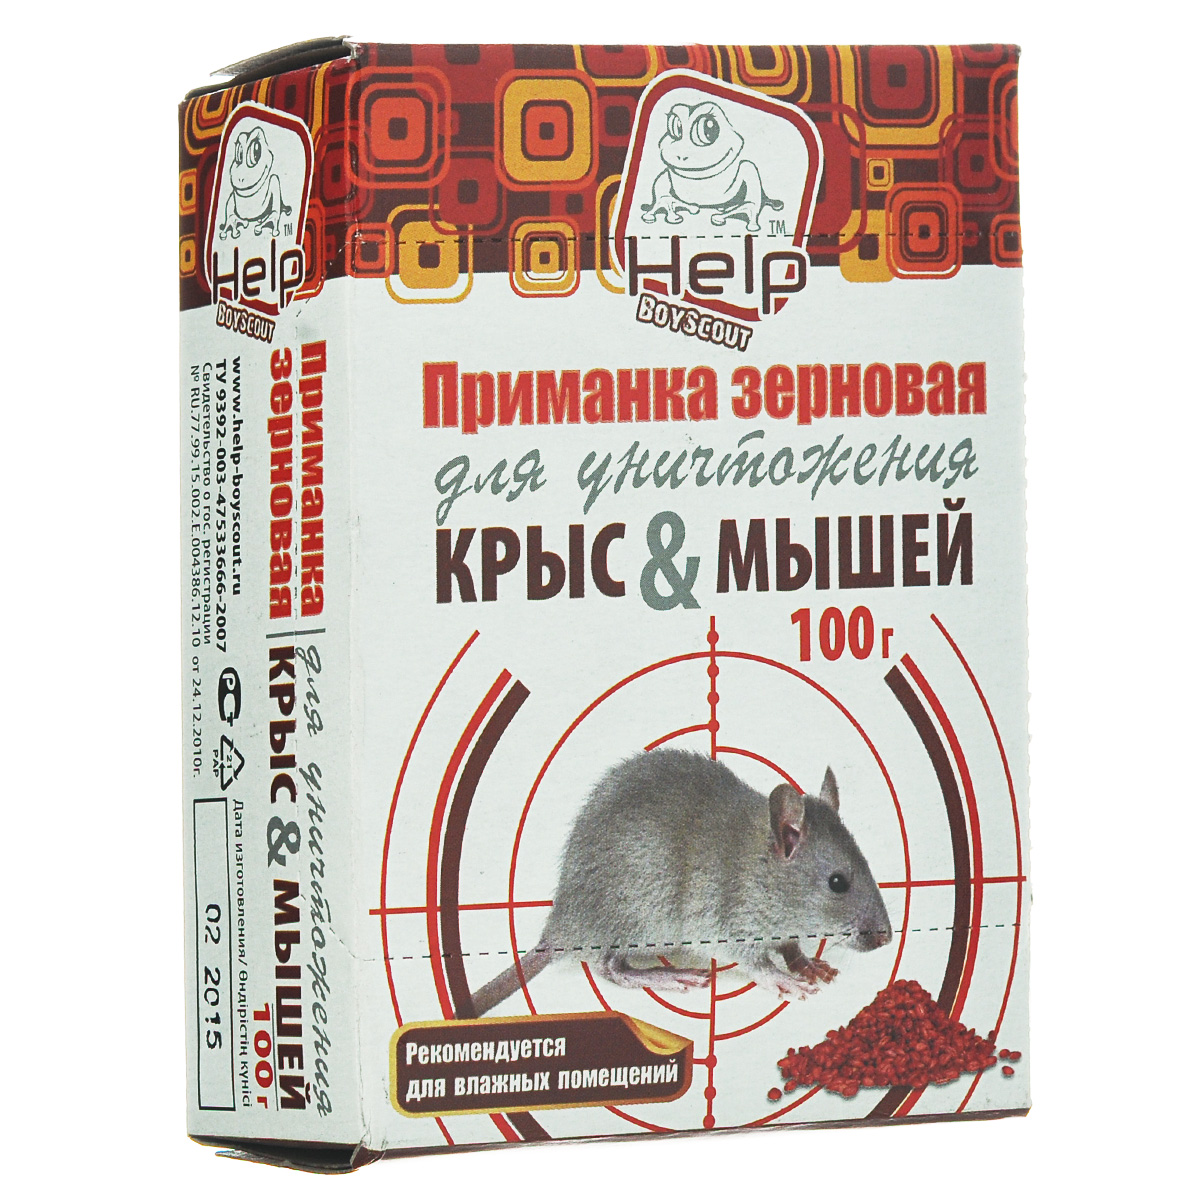 Help Приманка зерновая для уничтожения крыс и мышей коробка 100 г/50